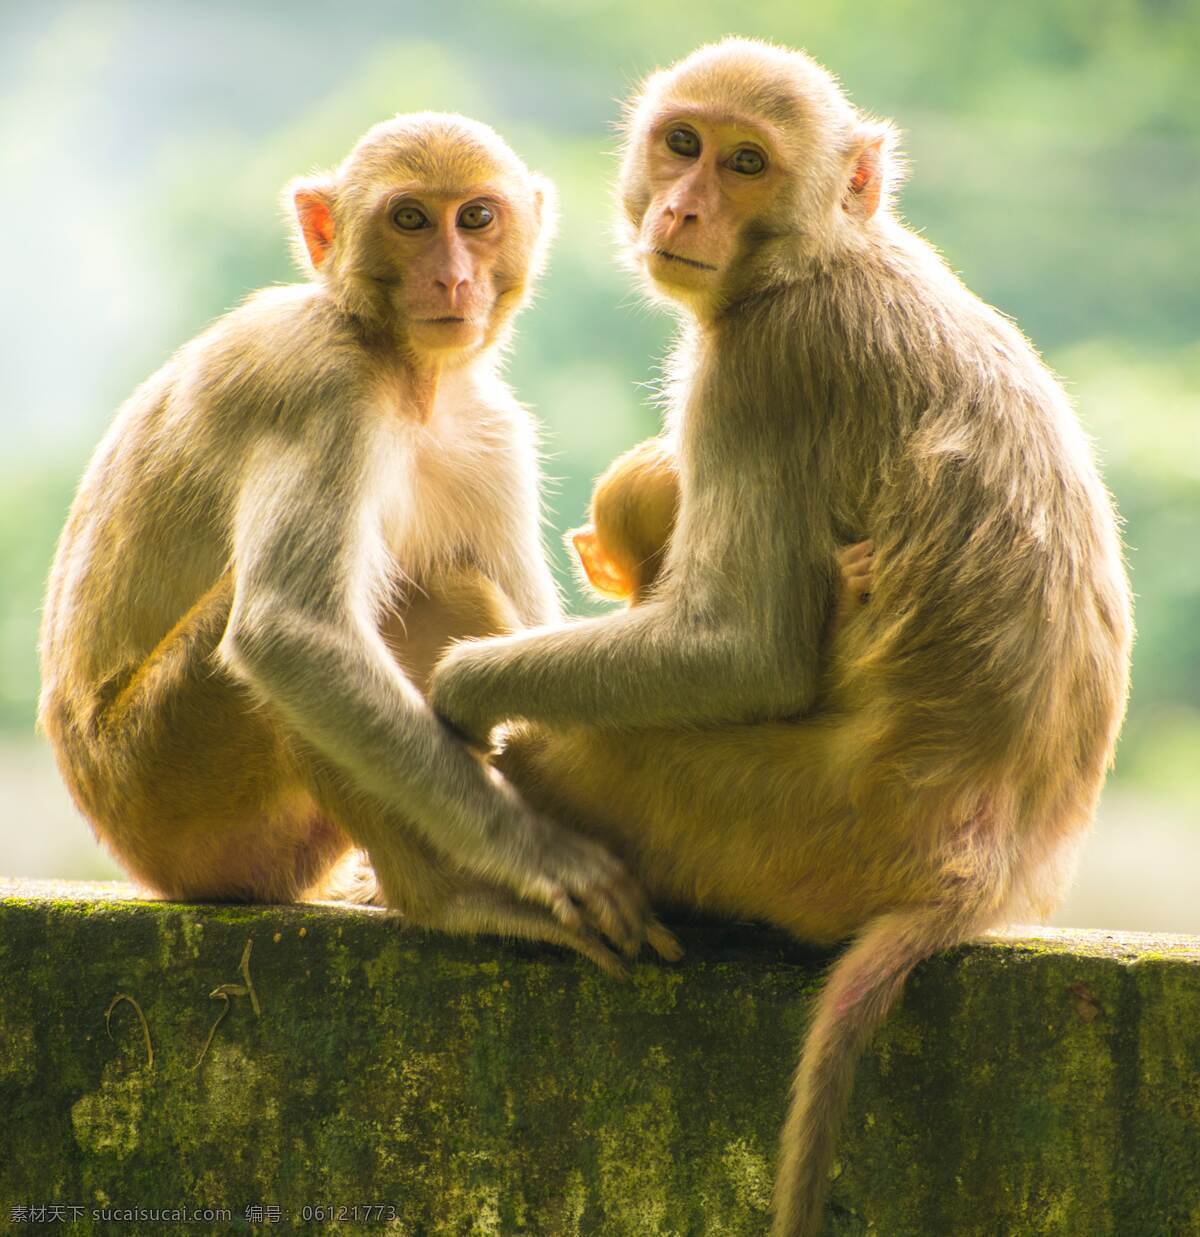 小猴子 动物 可爱的猴子 猴子摄影 猴子图片 猴子背景 生物世界 野生动物